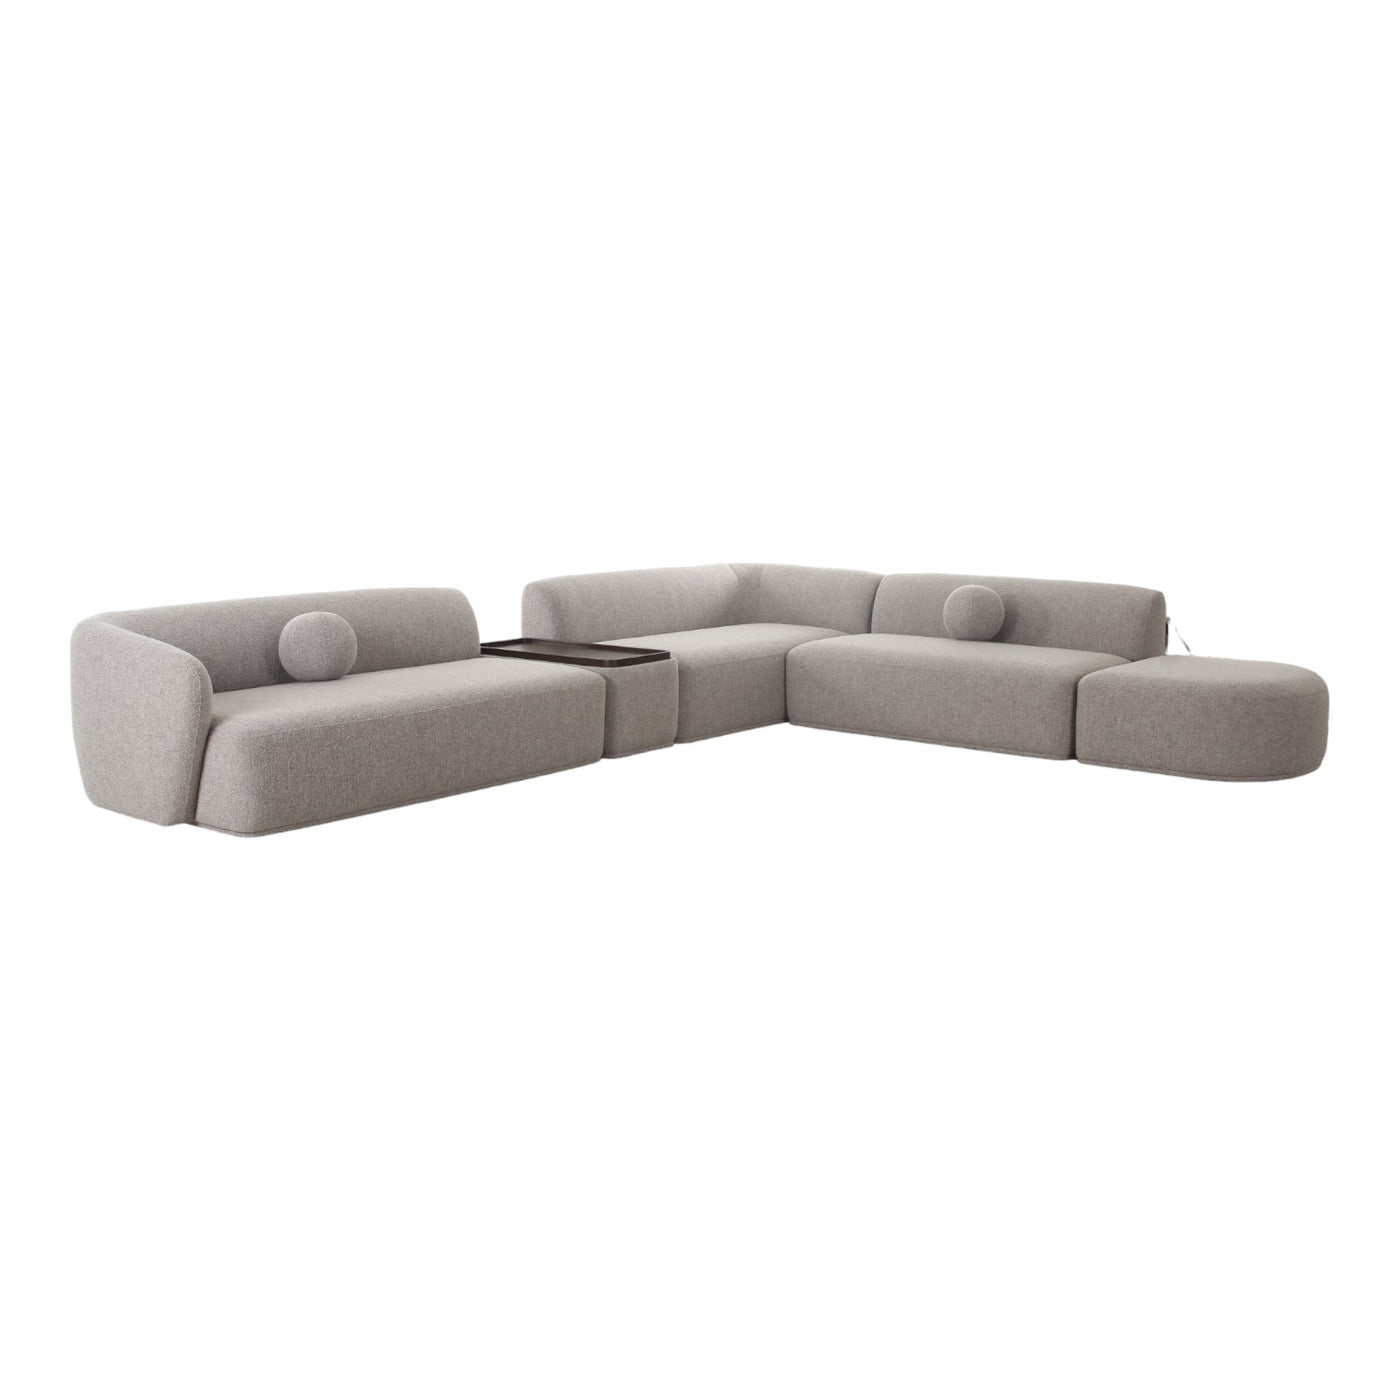 Galicia Modular Sofa - Future Classics Furniture